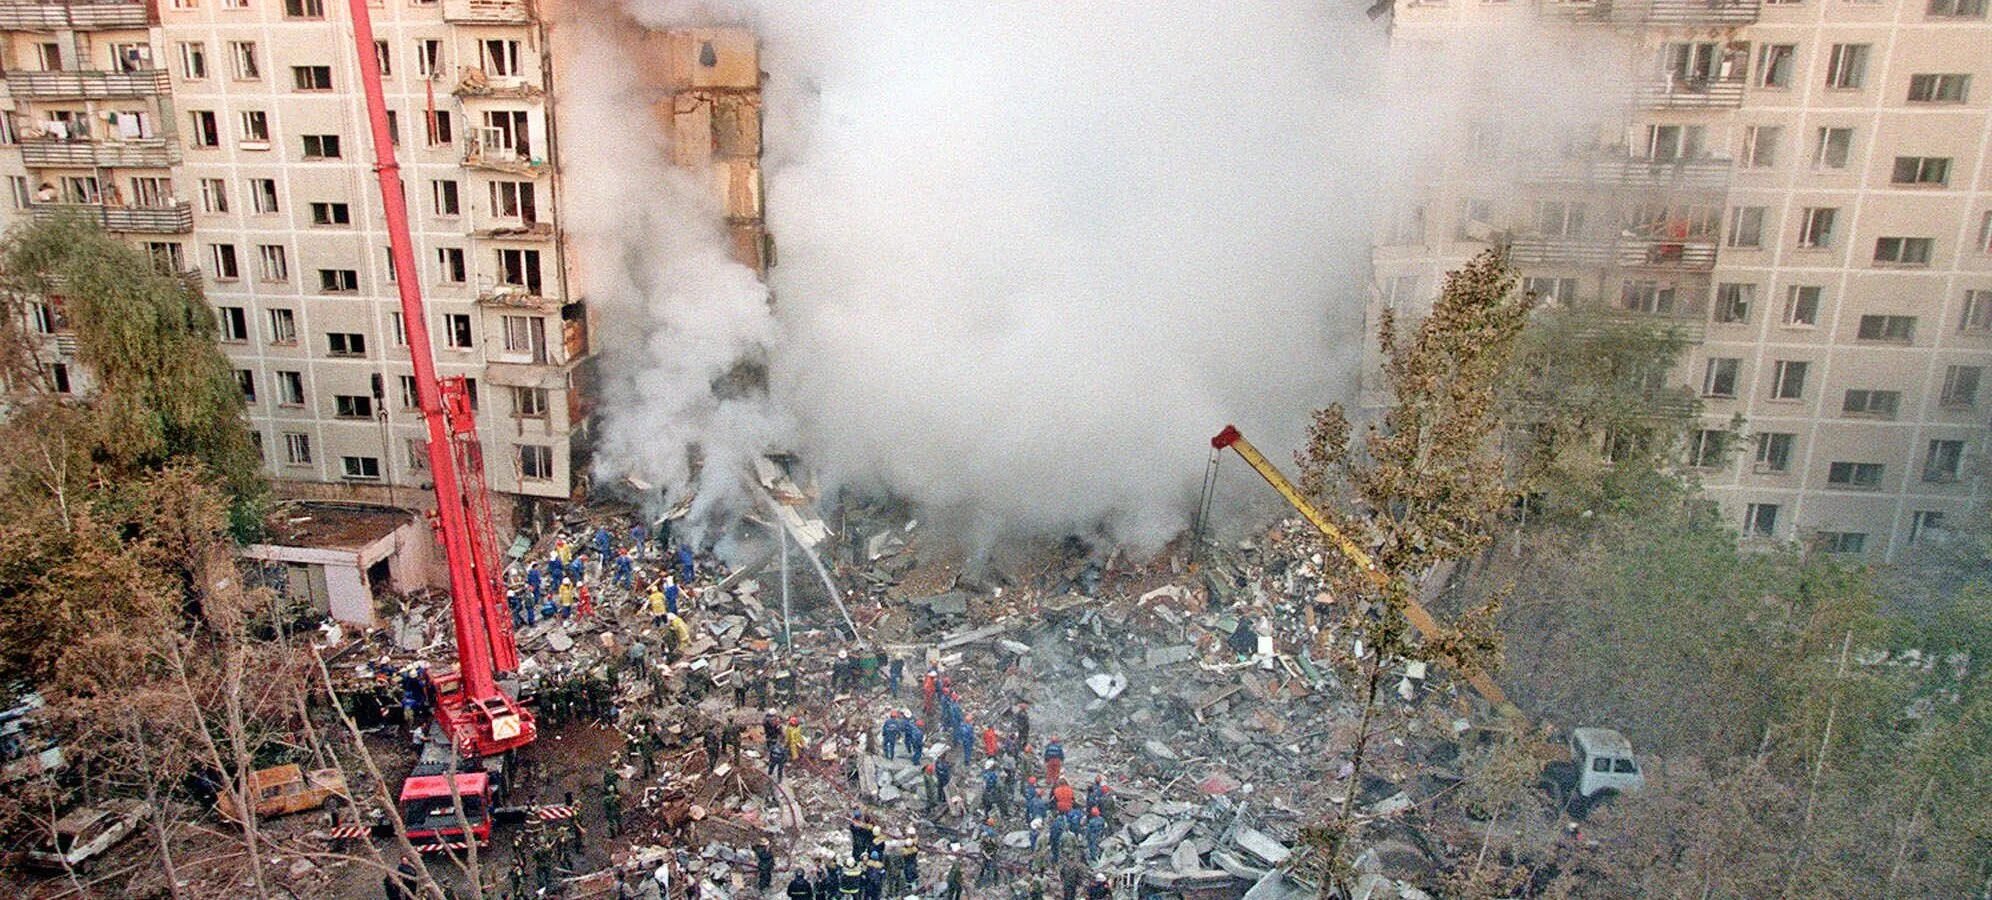 Теракт 1999 года в Москве на улице Гурьянова. Взрыв дома на улице Гурьянова в Москве 1999. Теракт 9 сентября 1999 года в Москве.